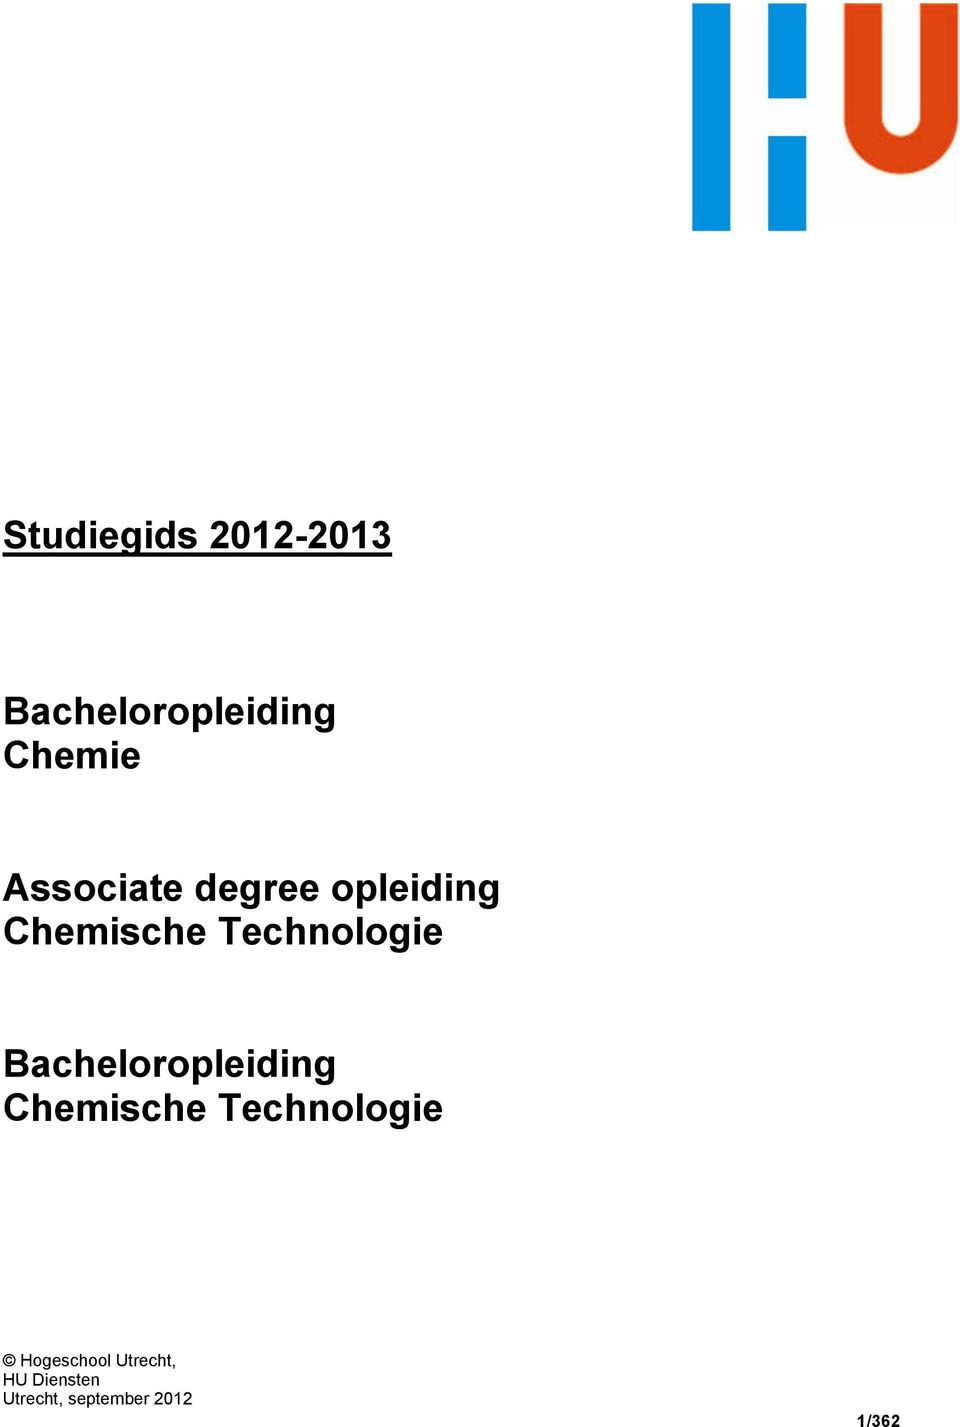 Bacheloropleiding Chemische Technologie